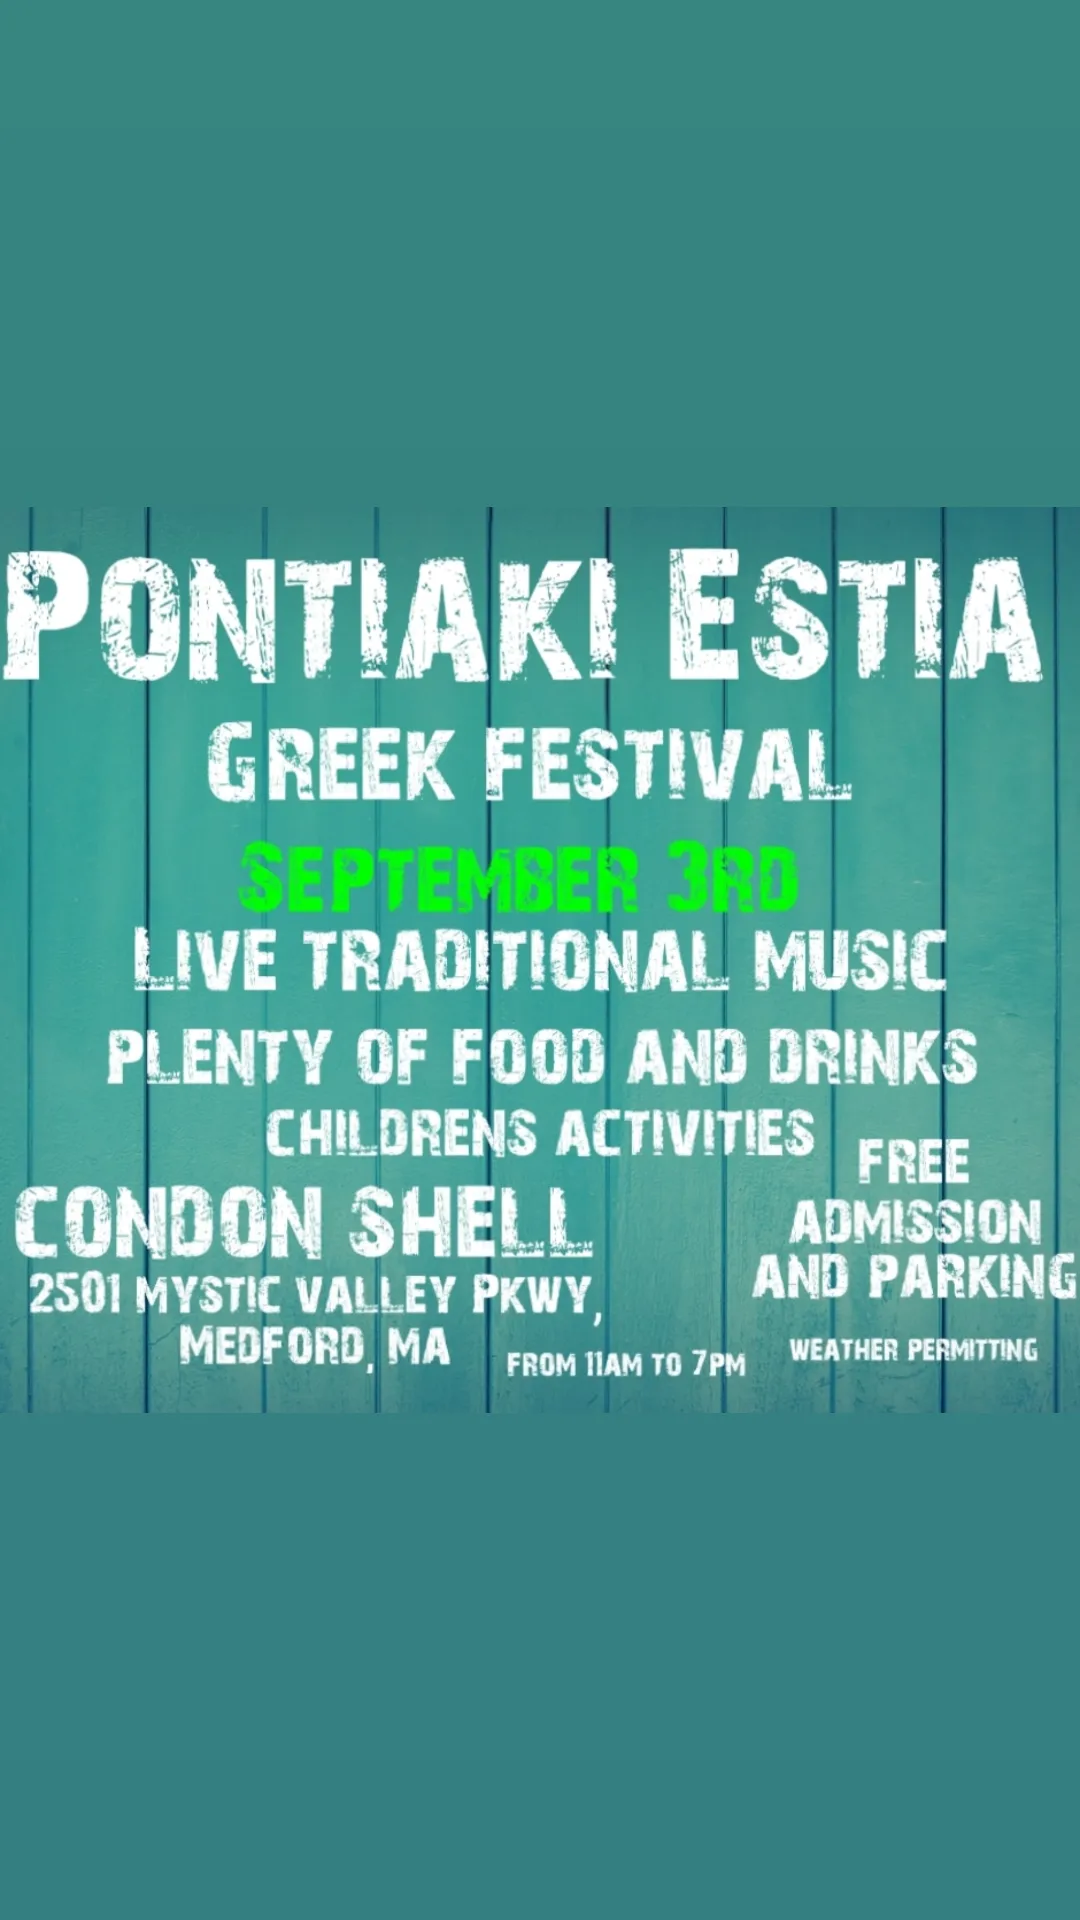 Greek Festival in Medford MA